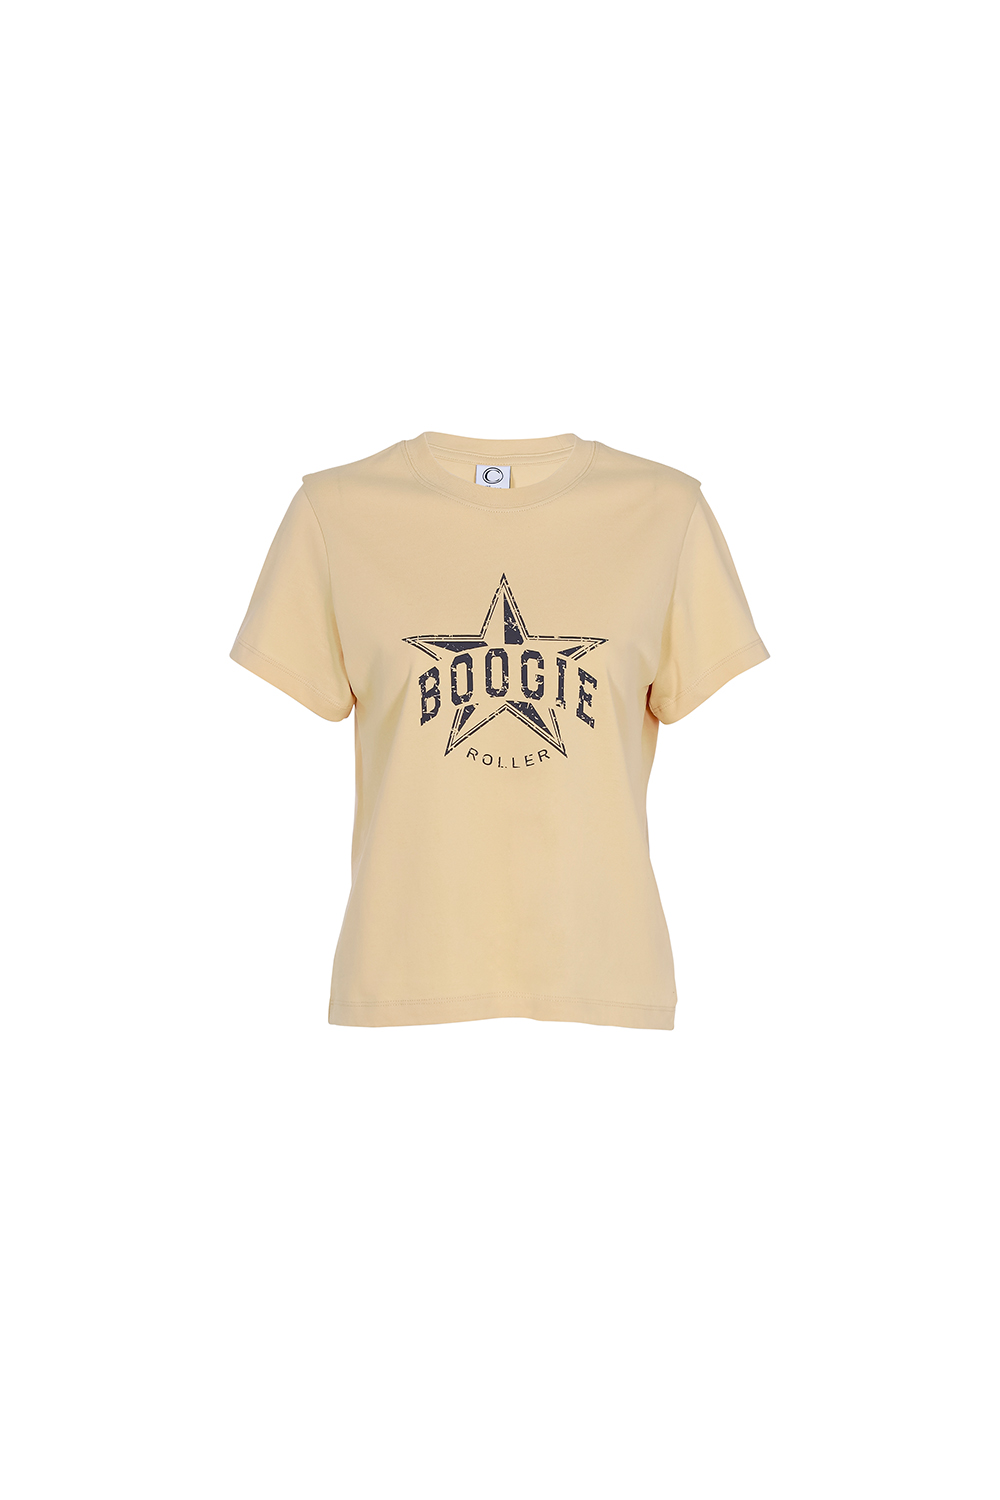 Boogie T-shirts_beige